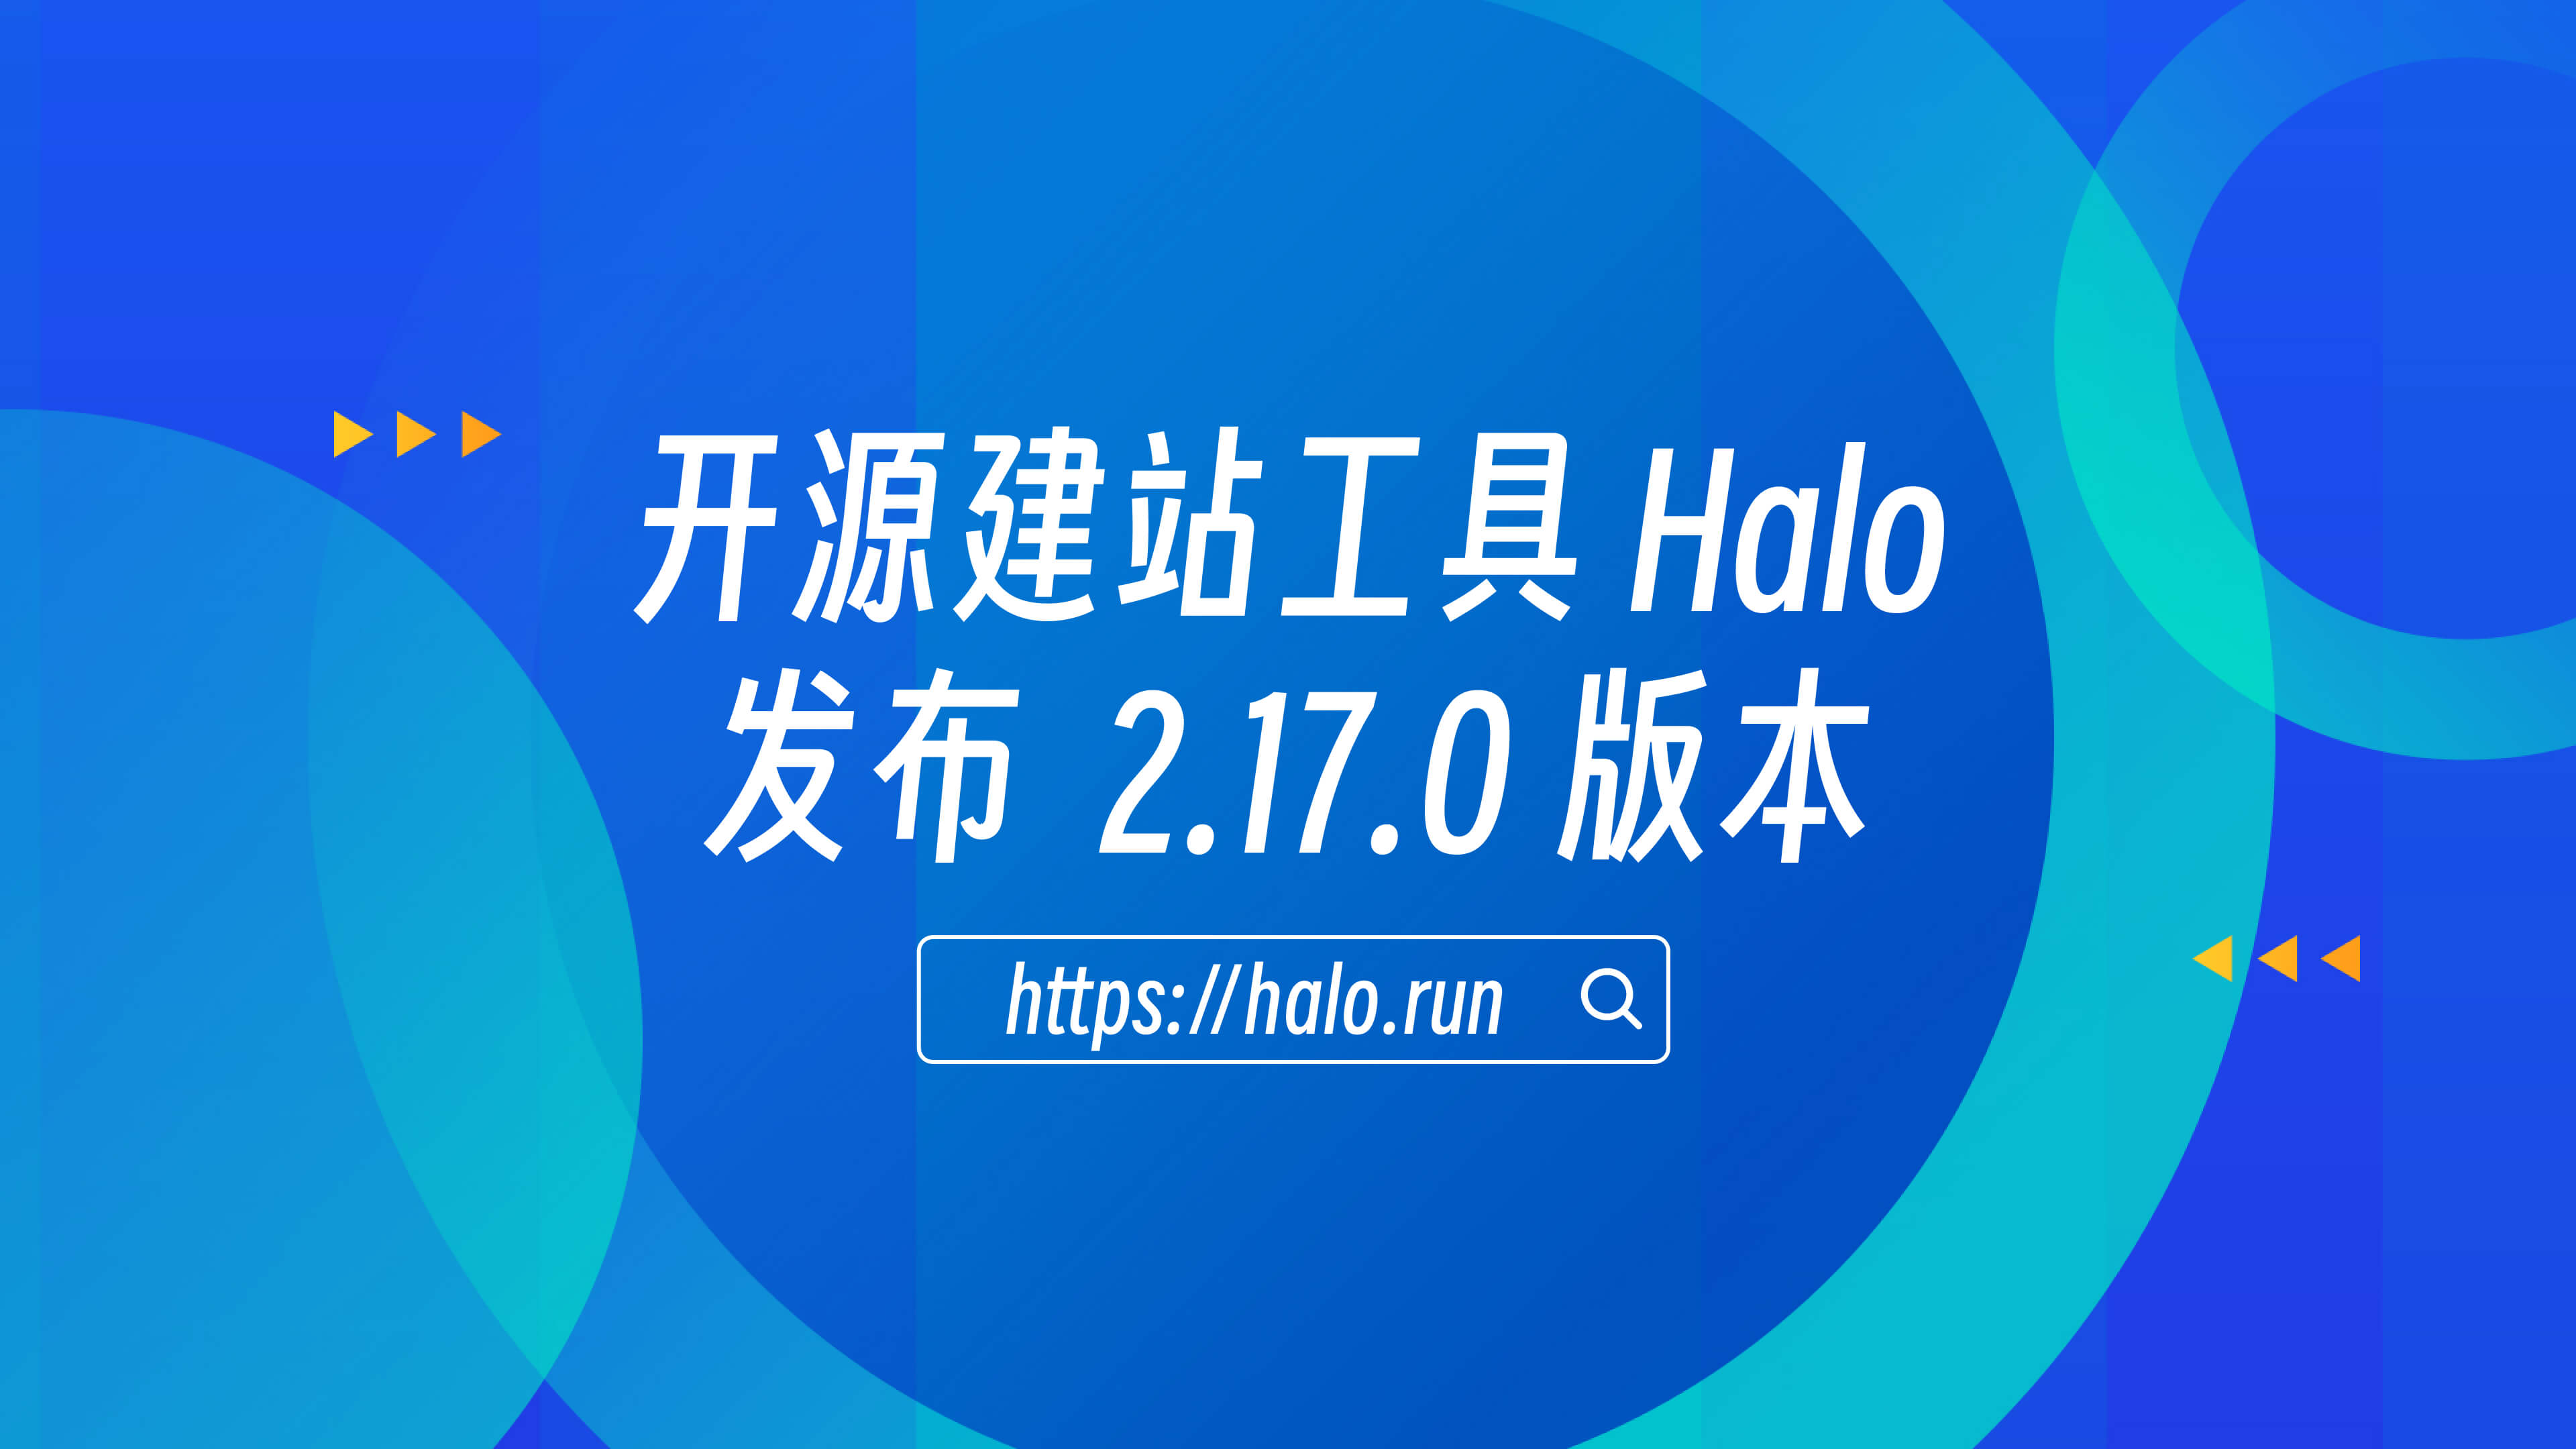 增强内容管理功能和大量系统优化，Halo 2.17.0 发布